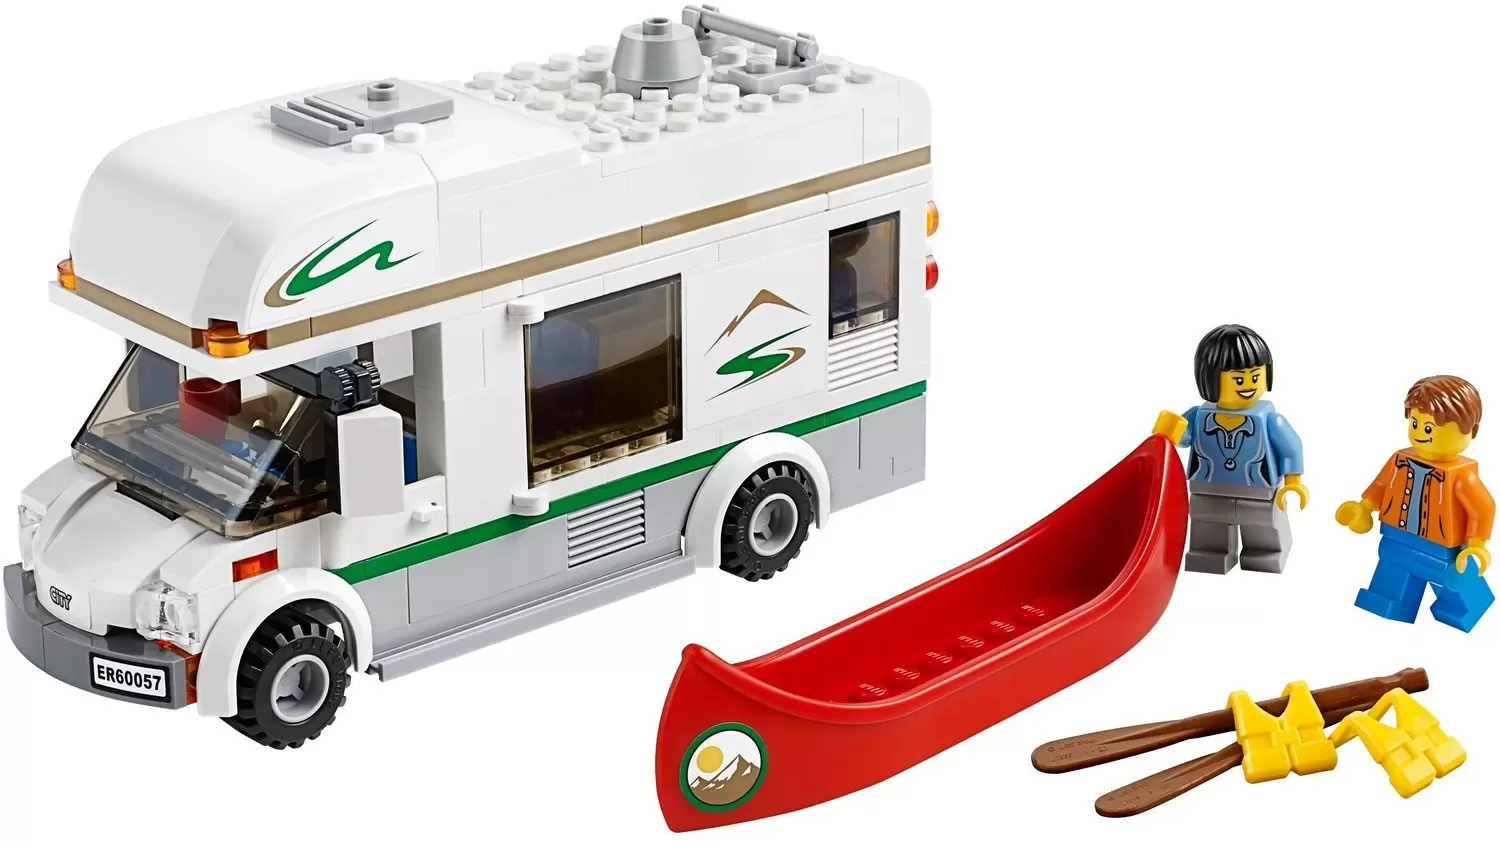 LEGO CITY - Camper Van